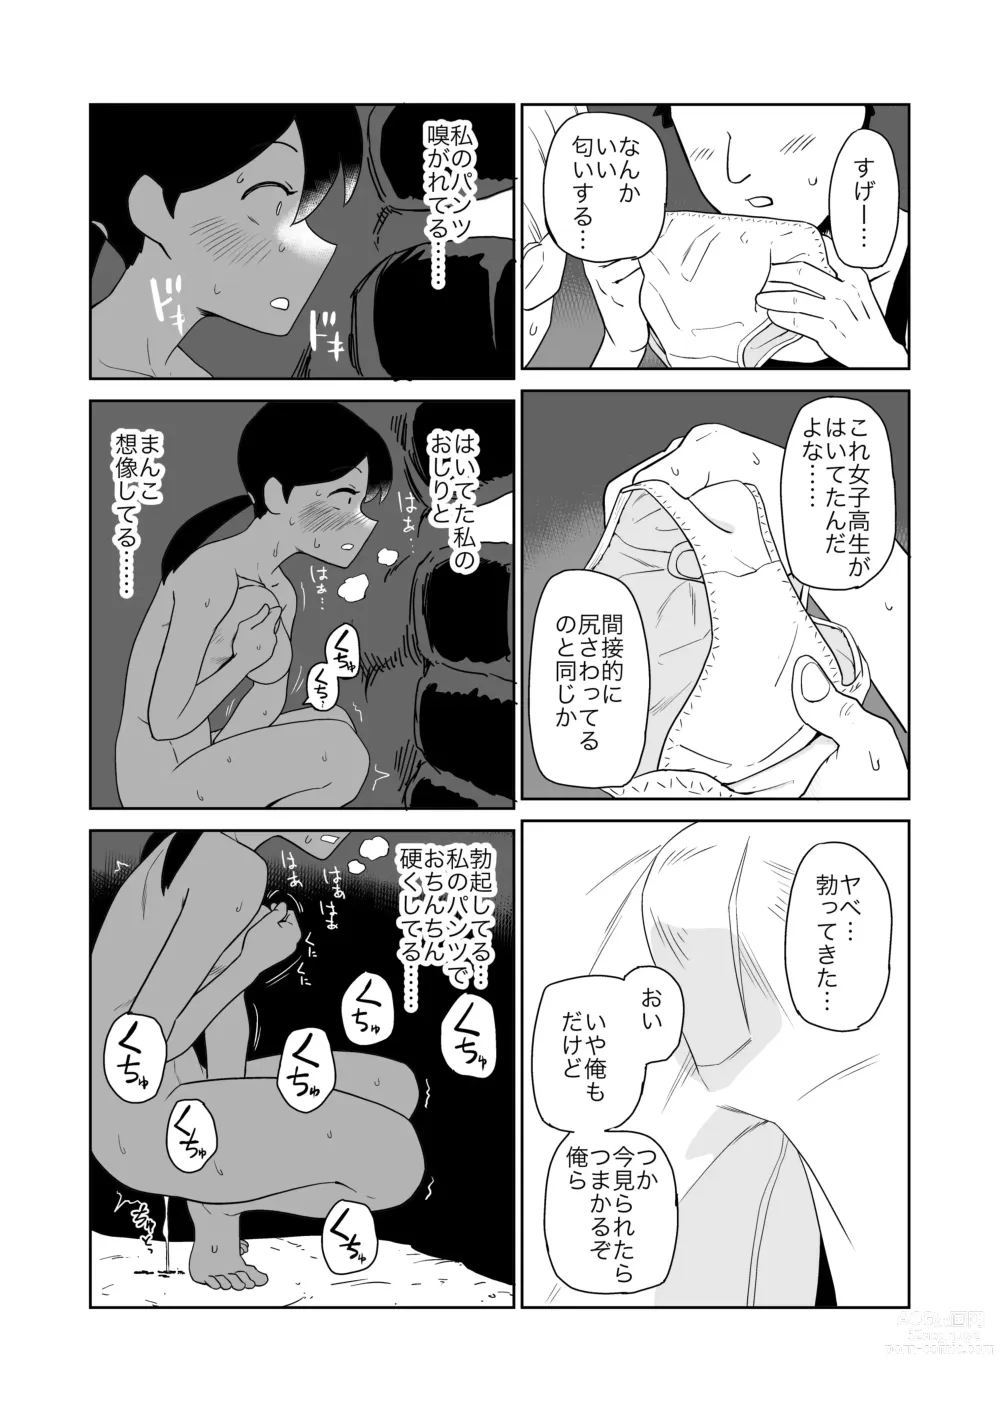 Page 15 of doujinshi Yoru,  Kouen, Roshutsu Jii.